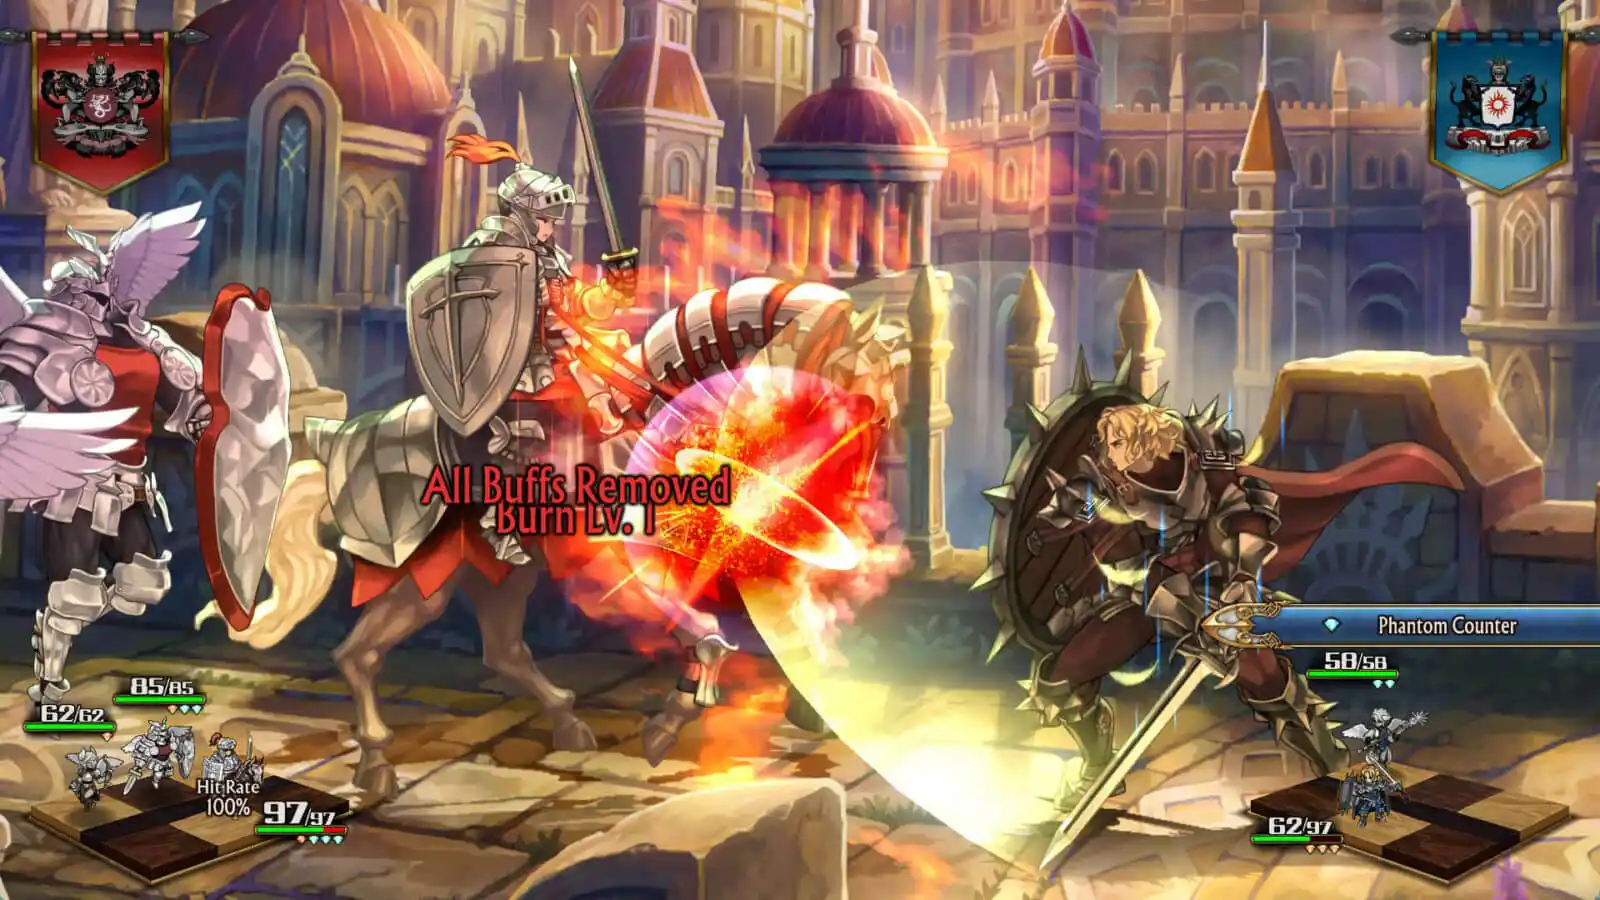 Des chevaliers fantastiques se battent dans un jeu avec un effet d'explosion enflammé.